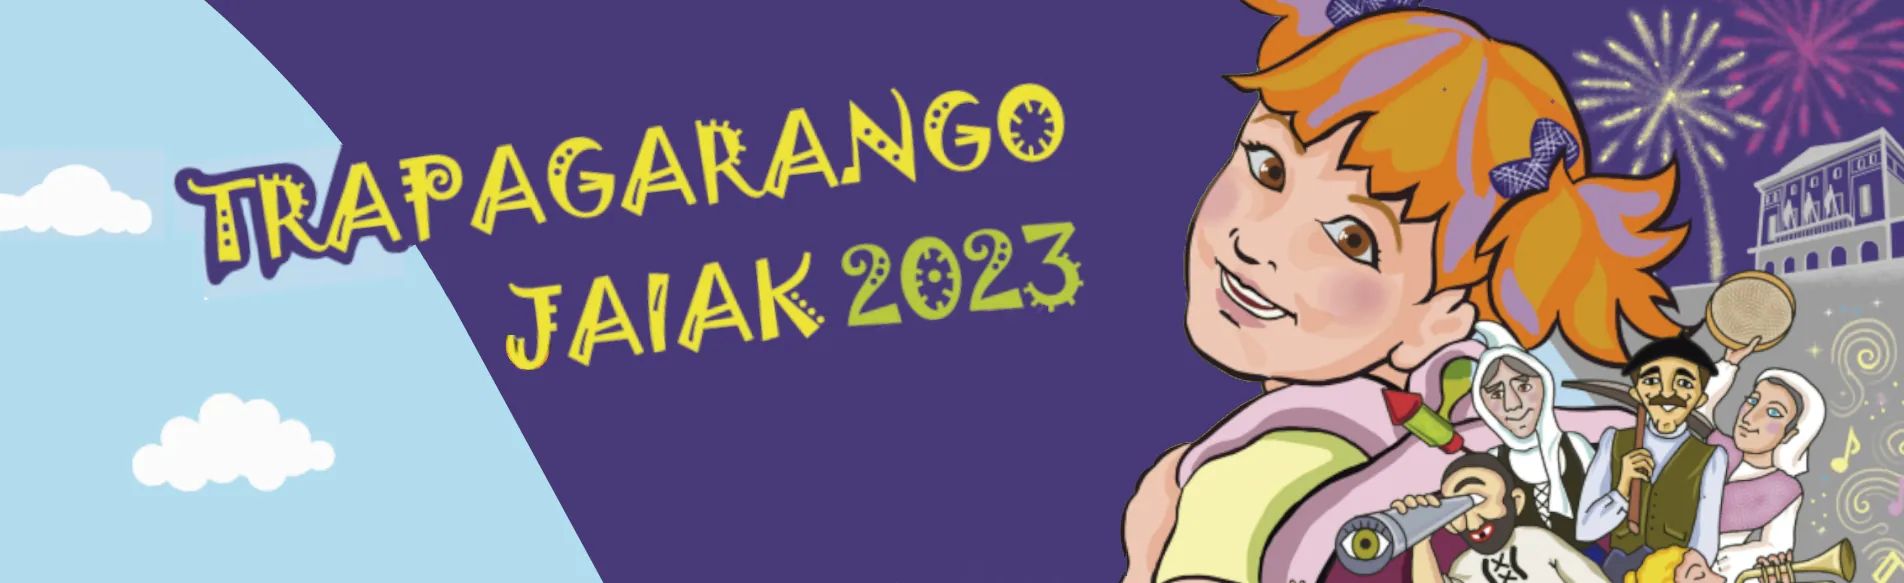 Trapagarango Jaiak 2022